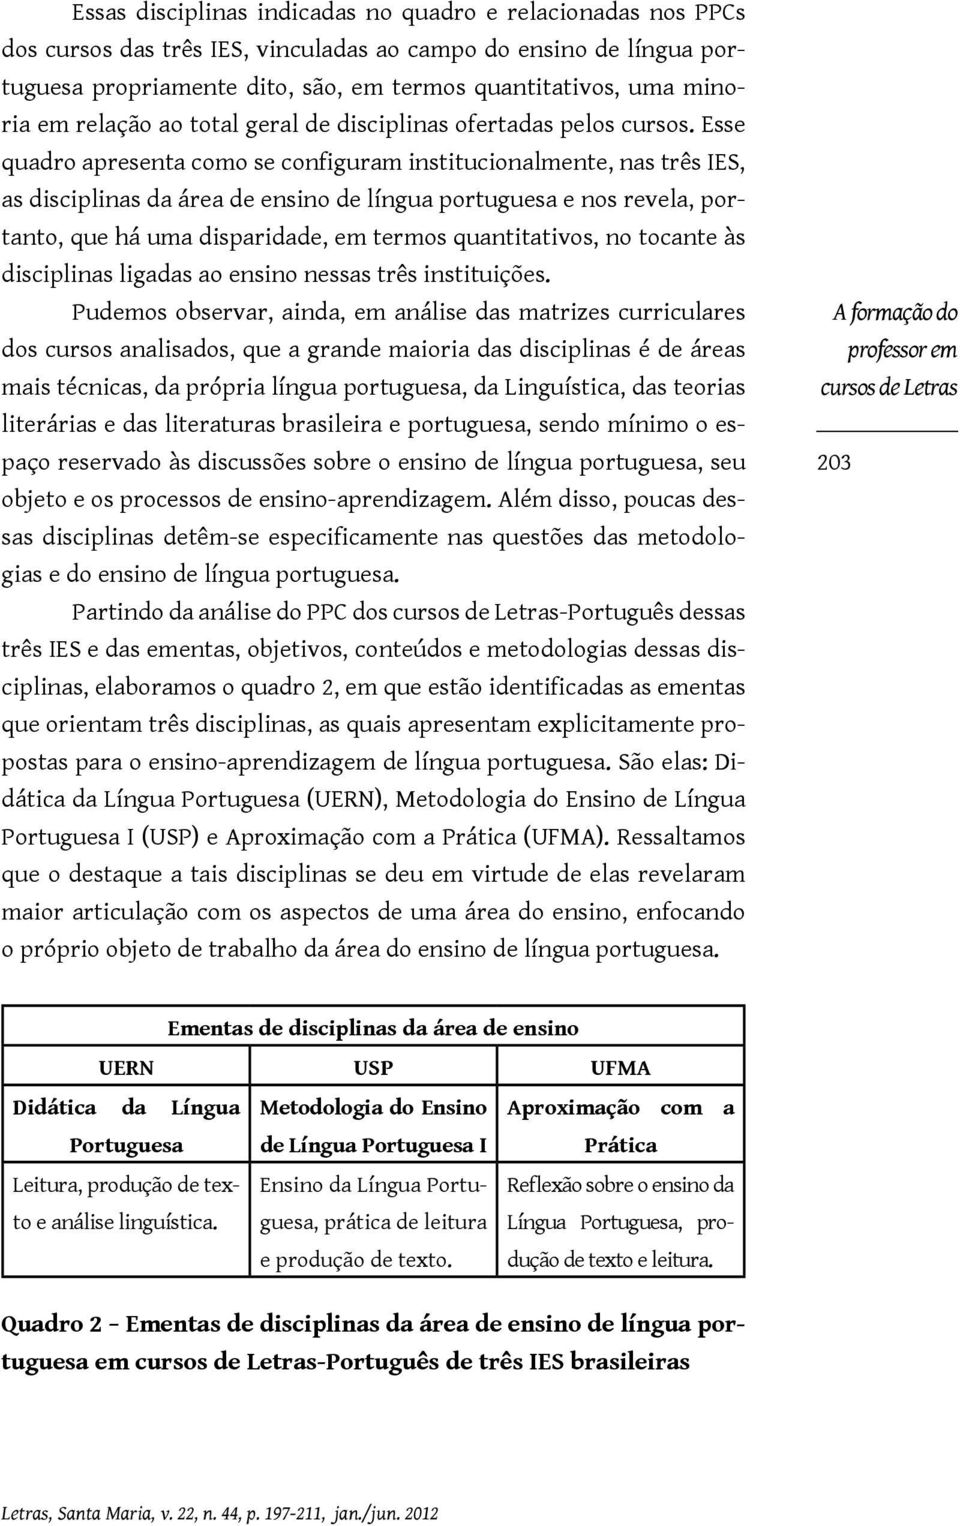 Esse quadro apresenta como se configuram institucionalmente, nas três IES, as disciplinas da área de ensino de língua portuguesa e nos revela, portanto, que há uma disparidade, em termos